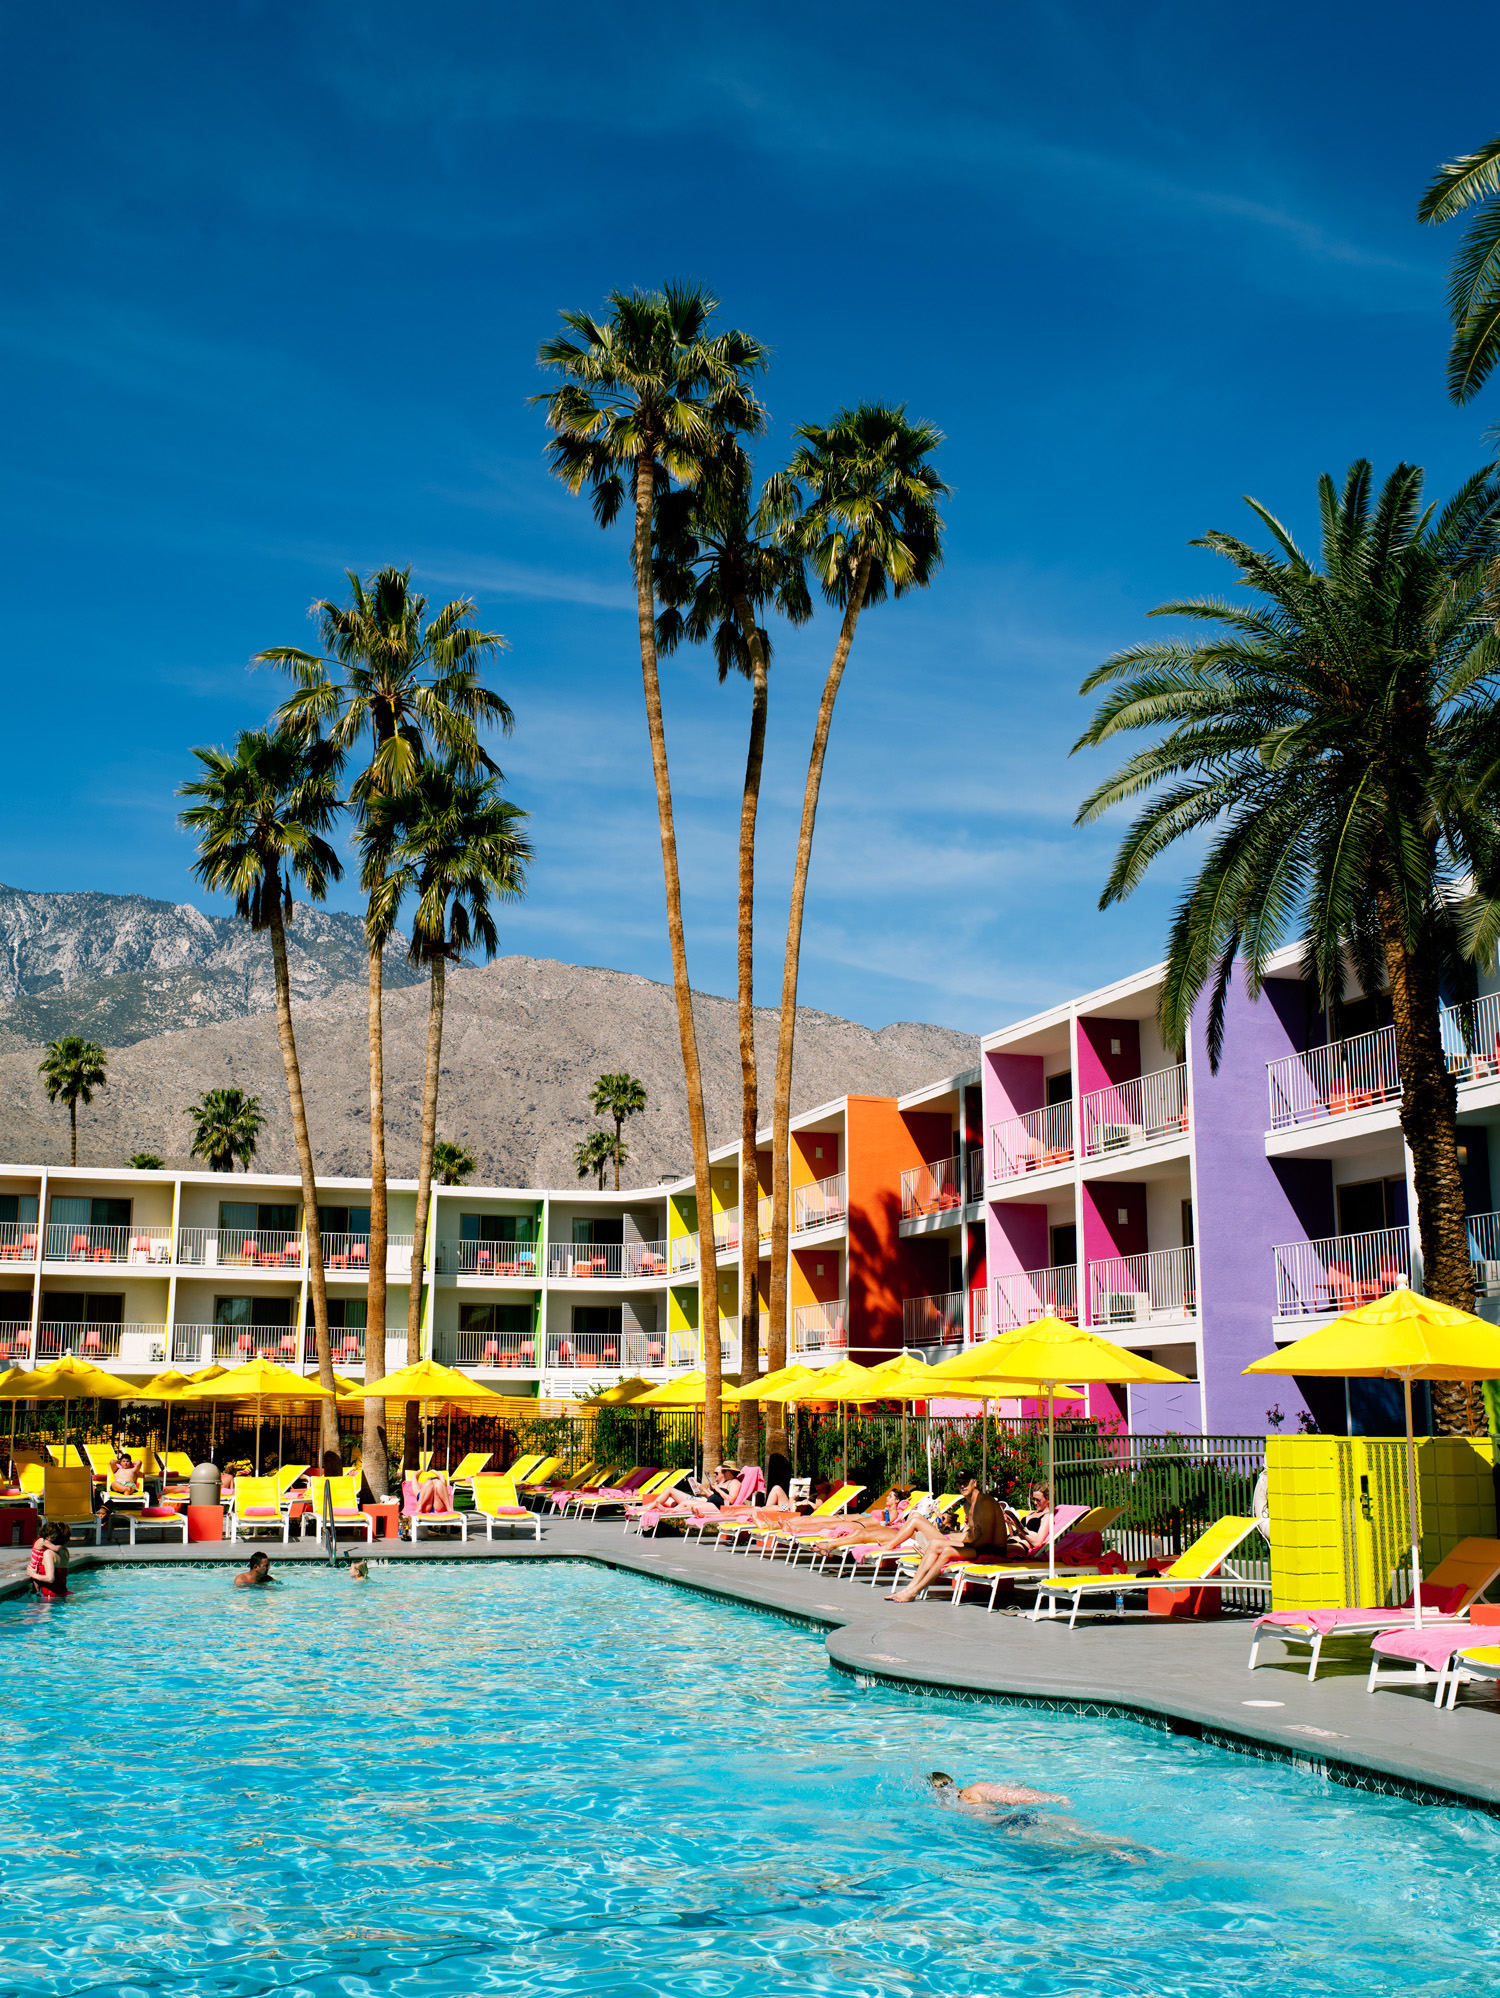 Poolside R&R in Palm Springs, CA